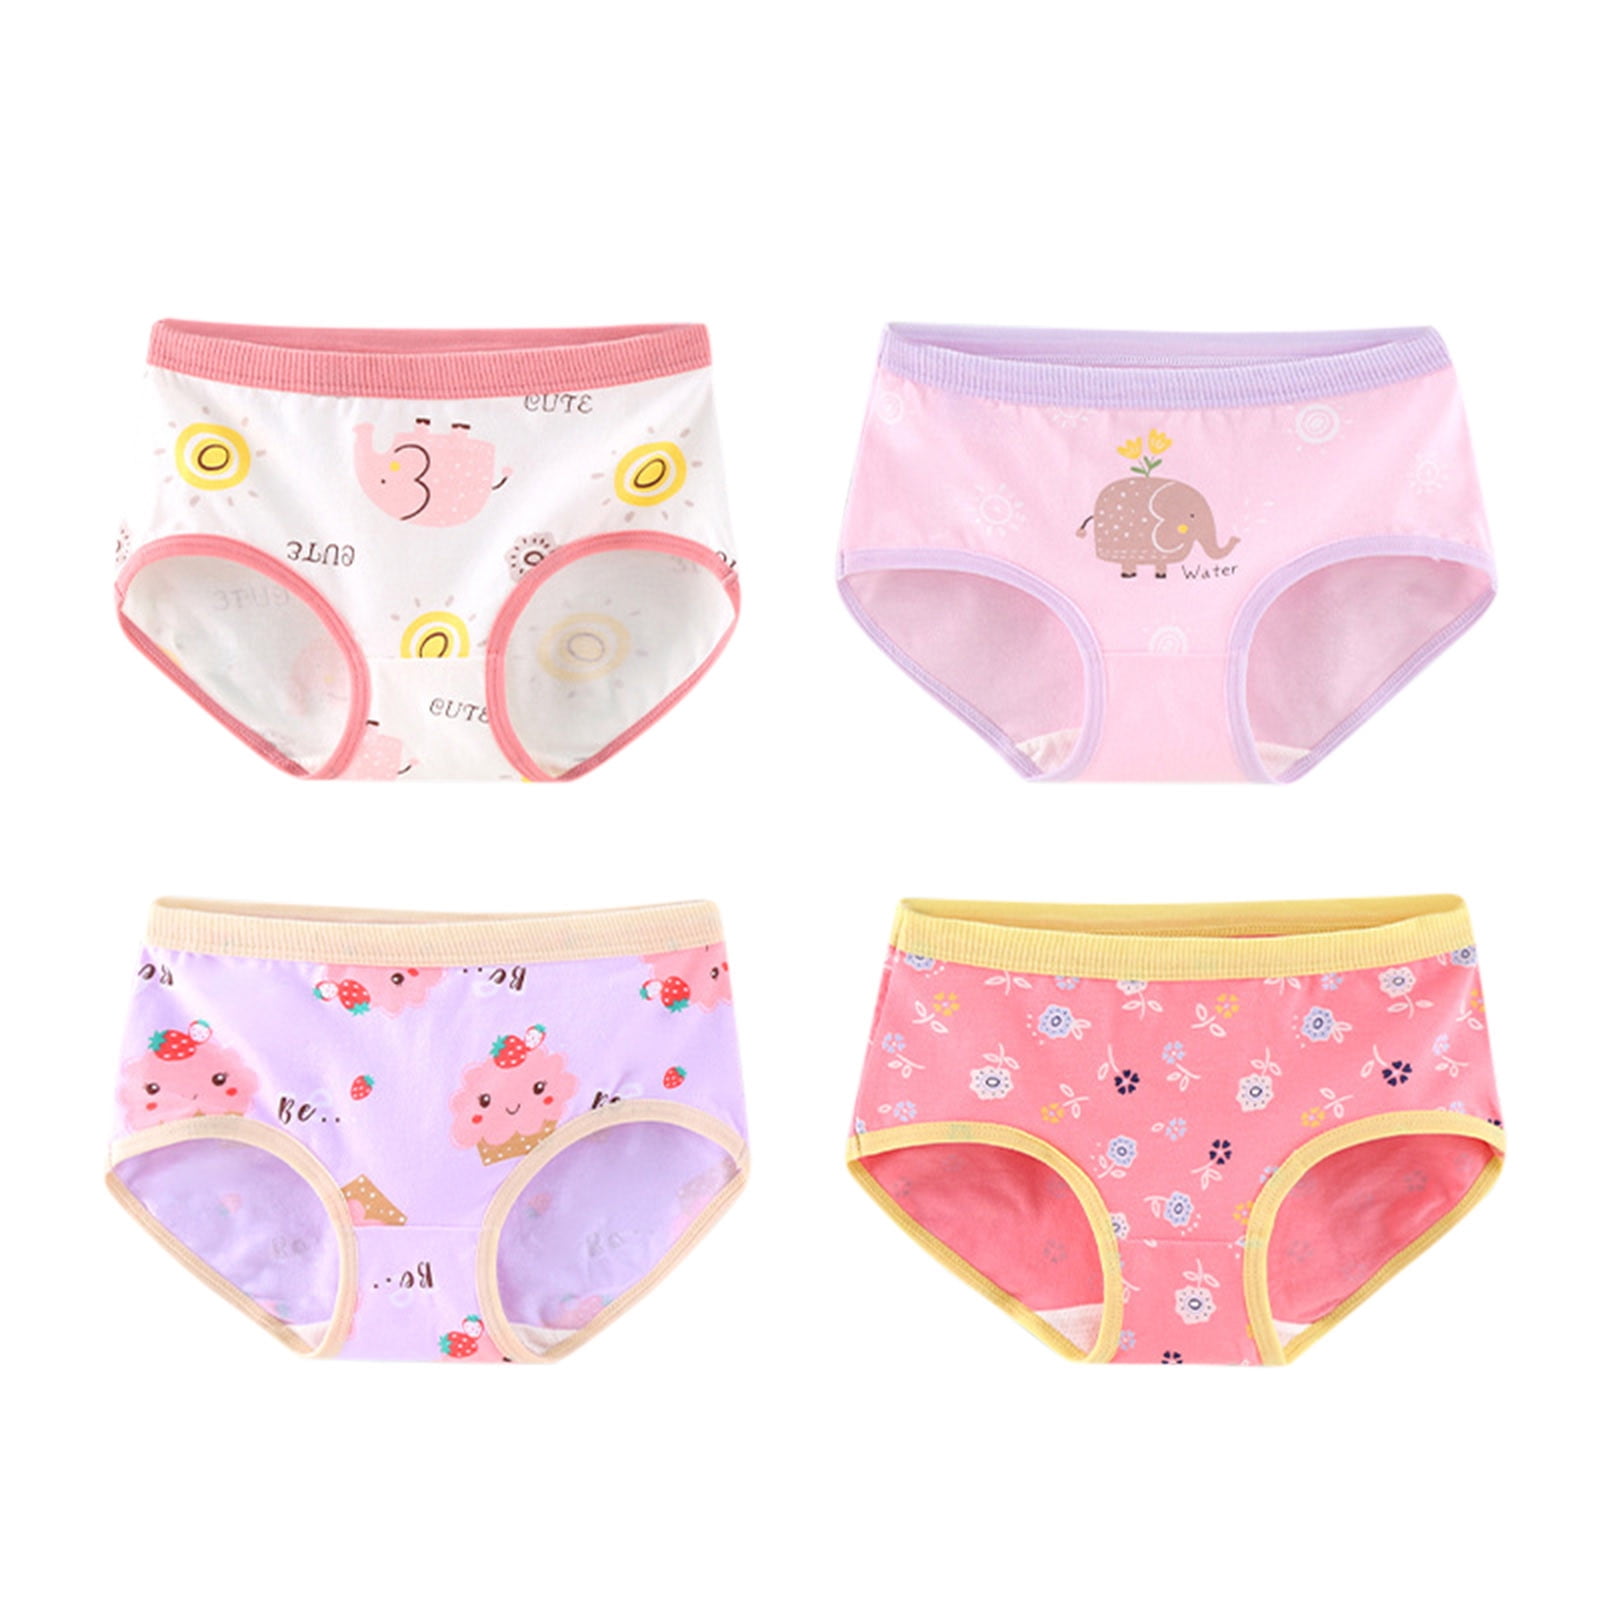 B91xZ Girls' Underwear Girls Underpants Cartoon Polka Dot Print Underwear  Cotton Briefs Trunks 4PCS (Orange, 4-5 Years) 